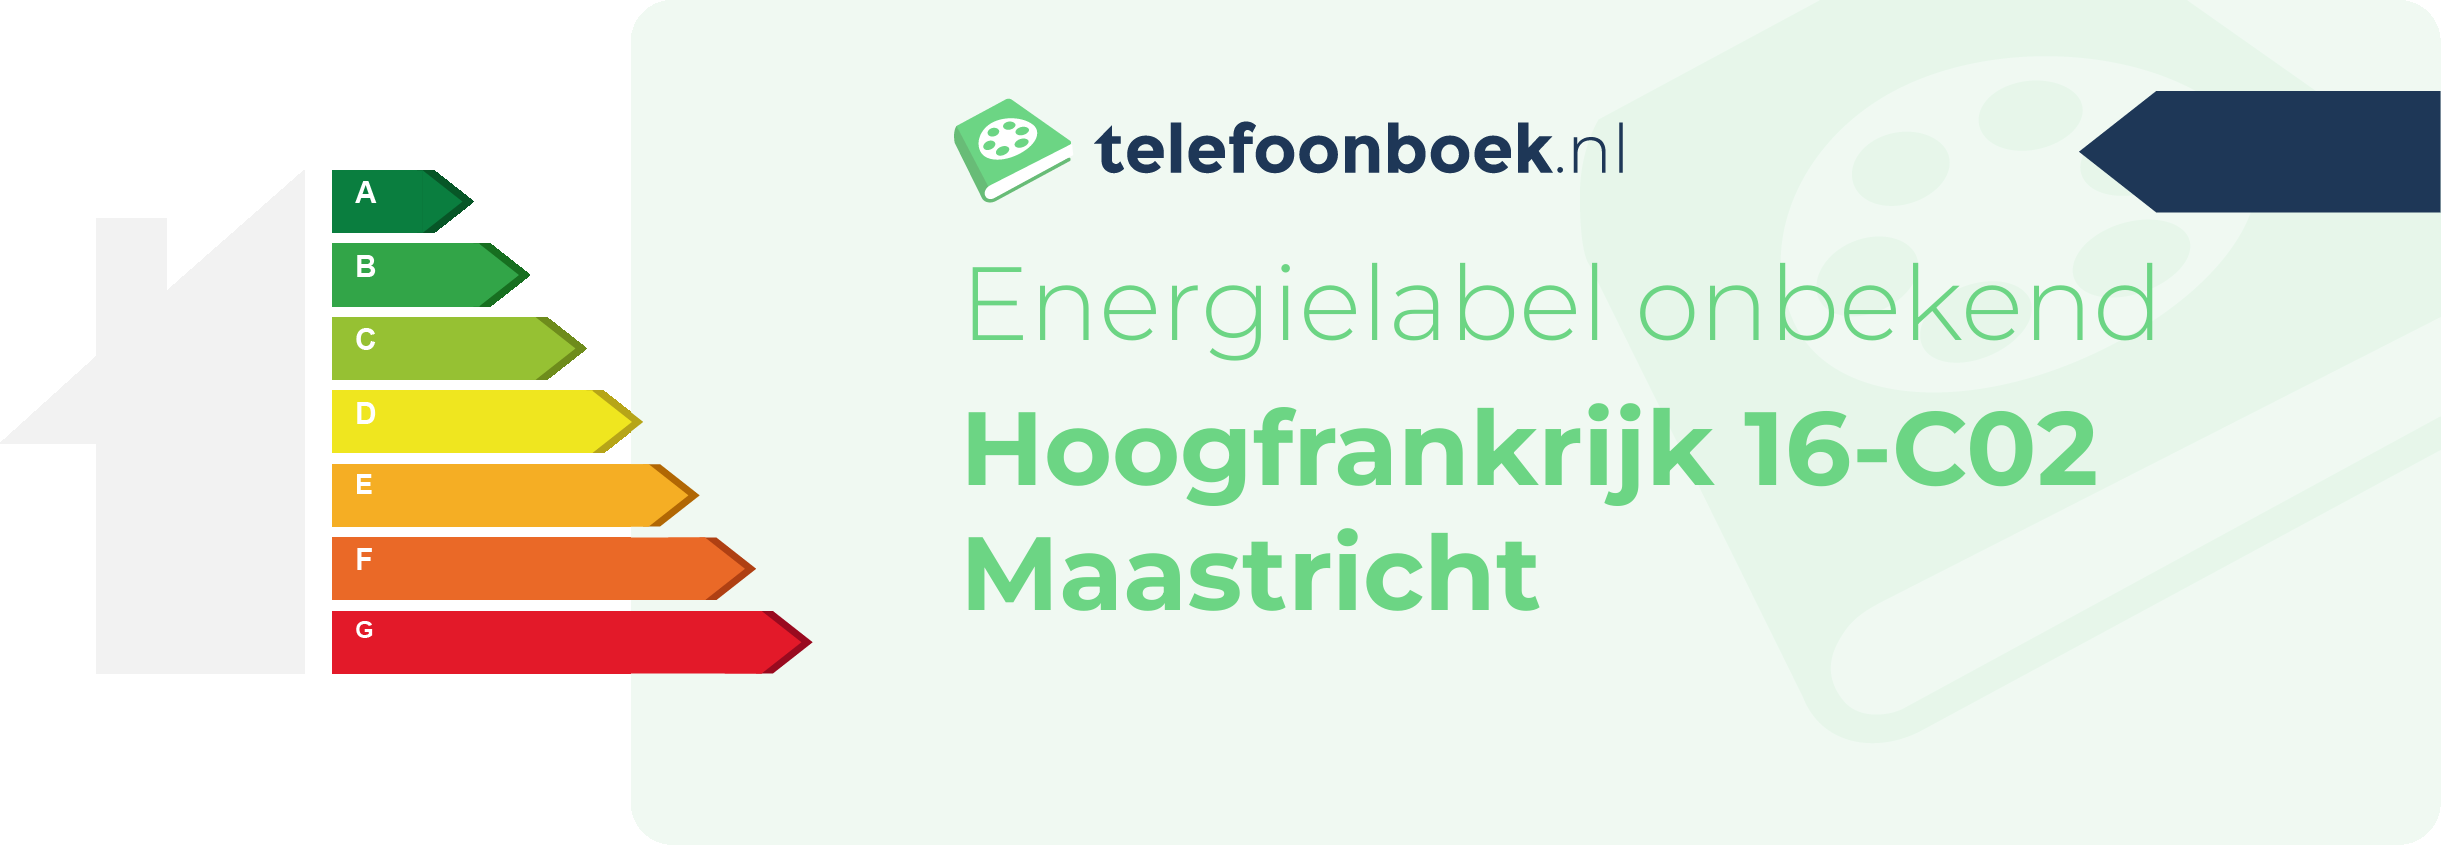 Energielabel Hoogfrankrijk 16-C02 Maastricht